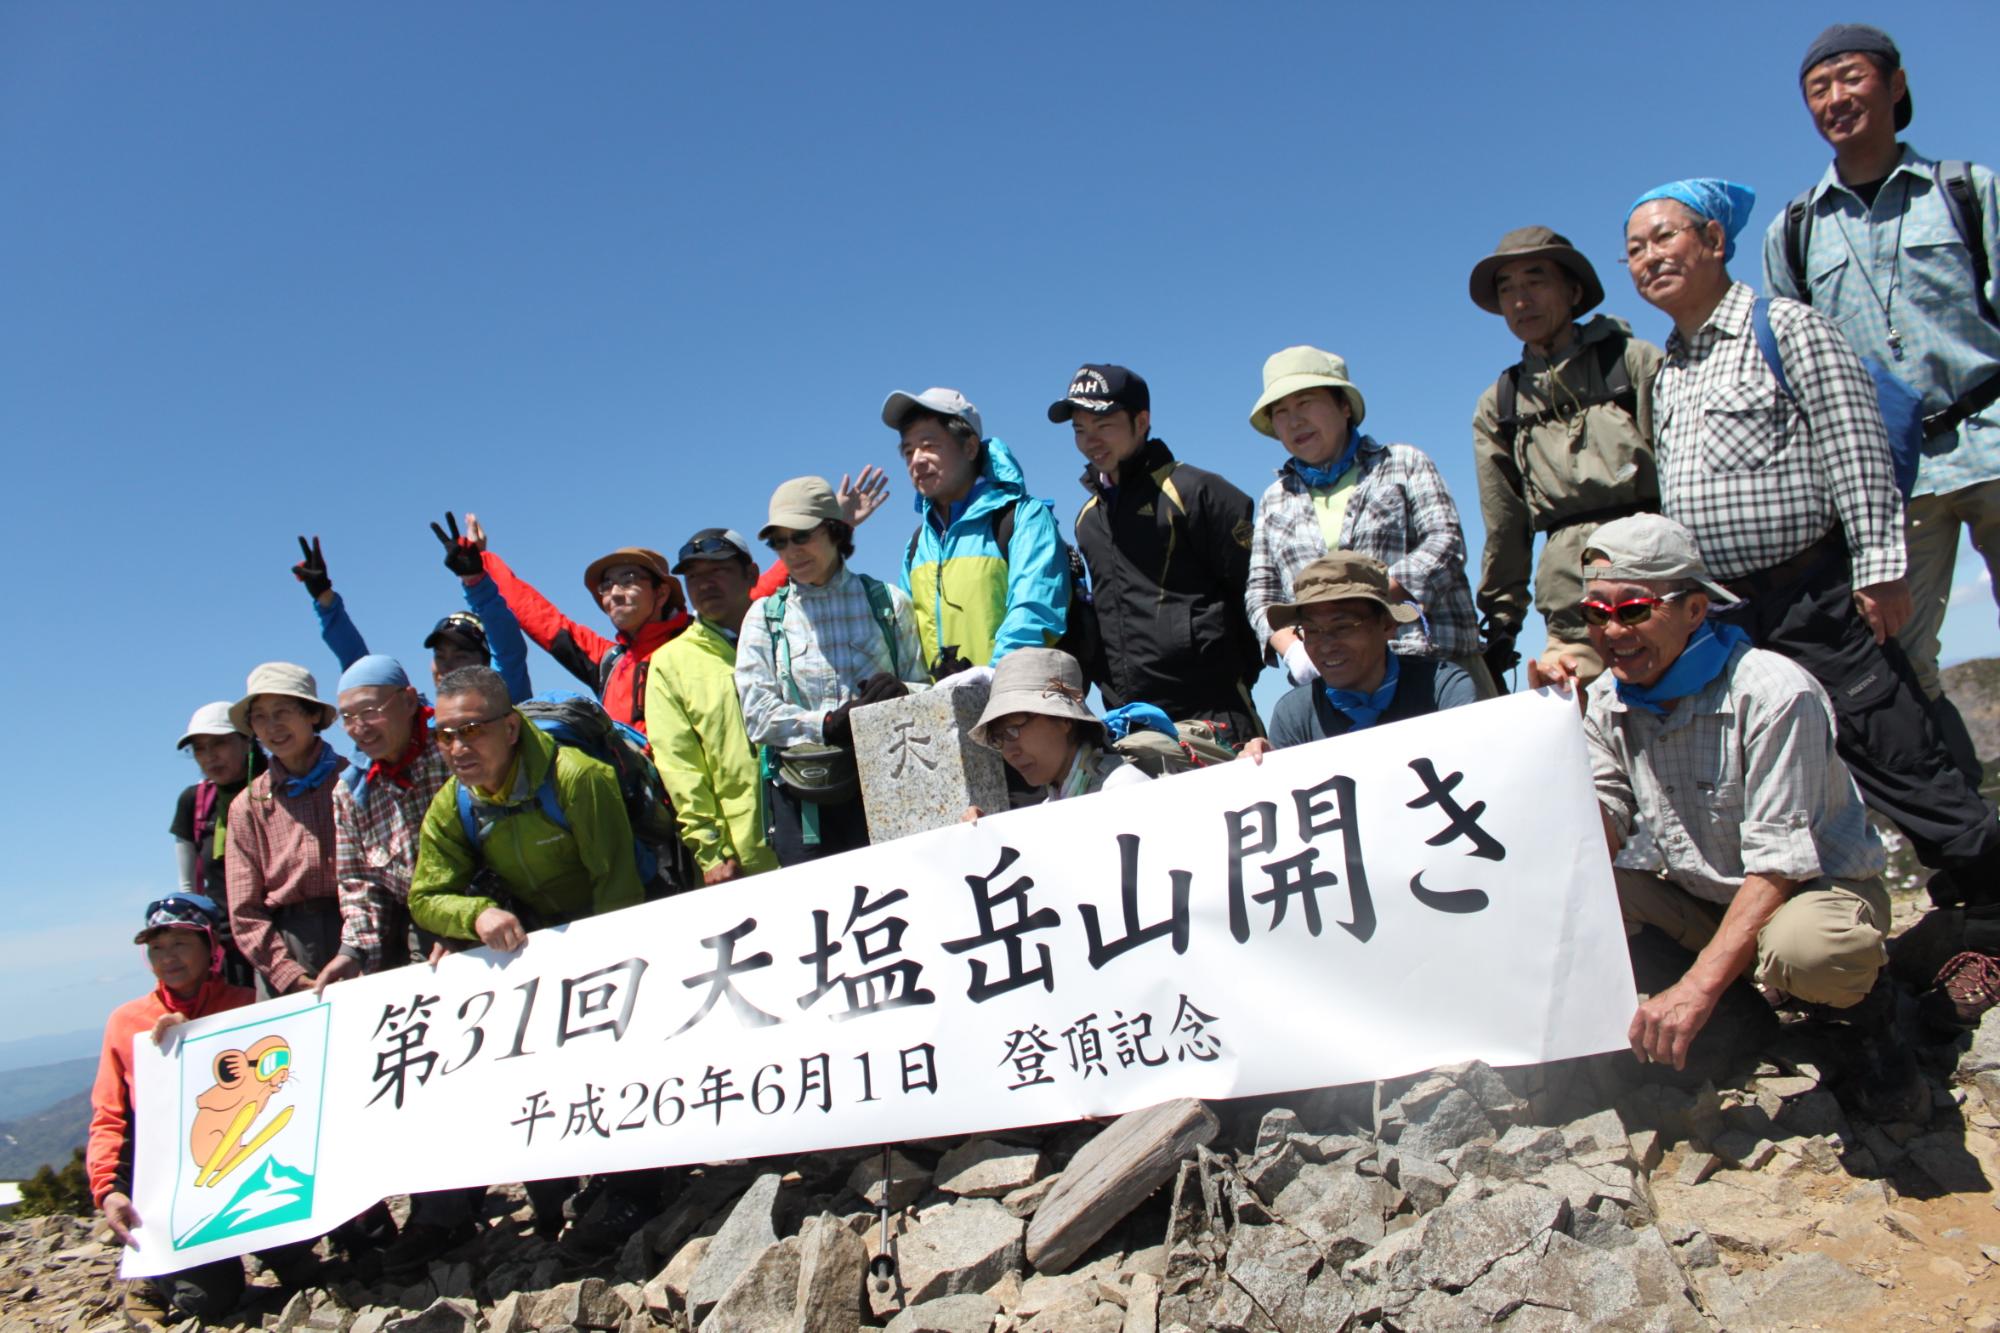 第31回天塩岳山開きと書かれた横断幕を持ち参加者の人達の記念写真